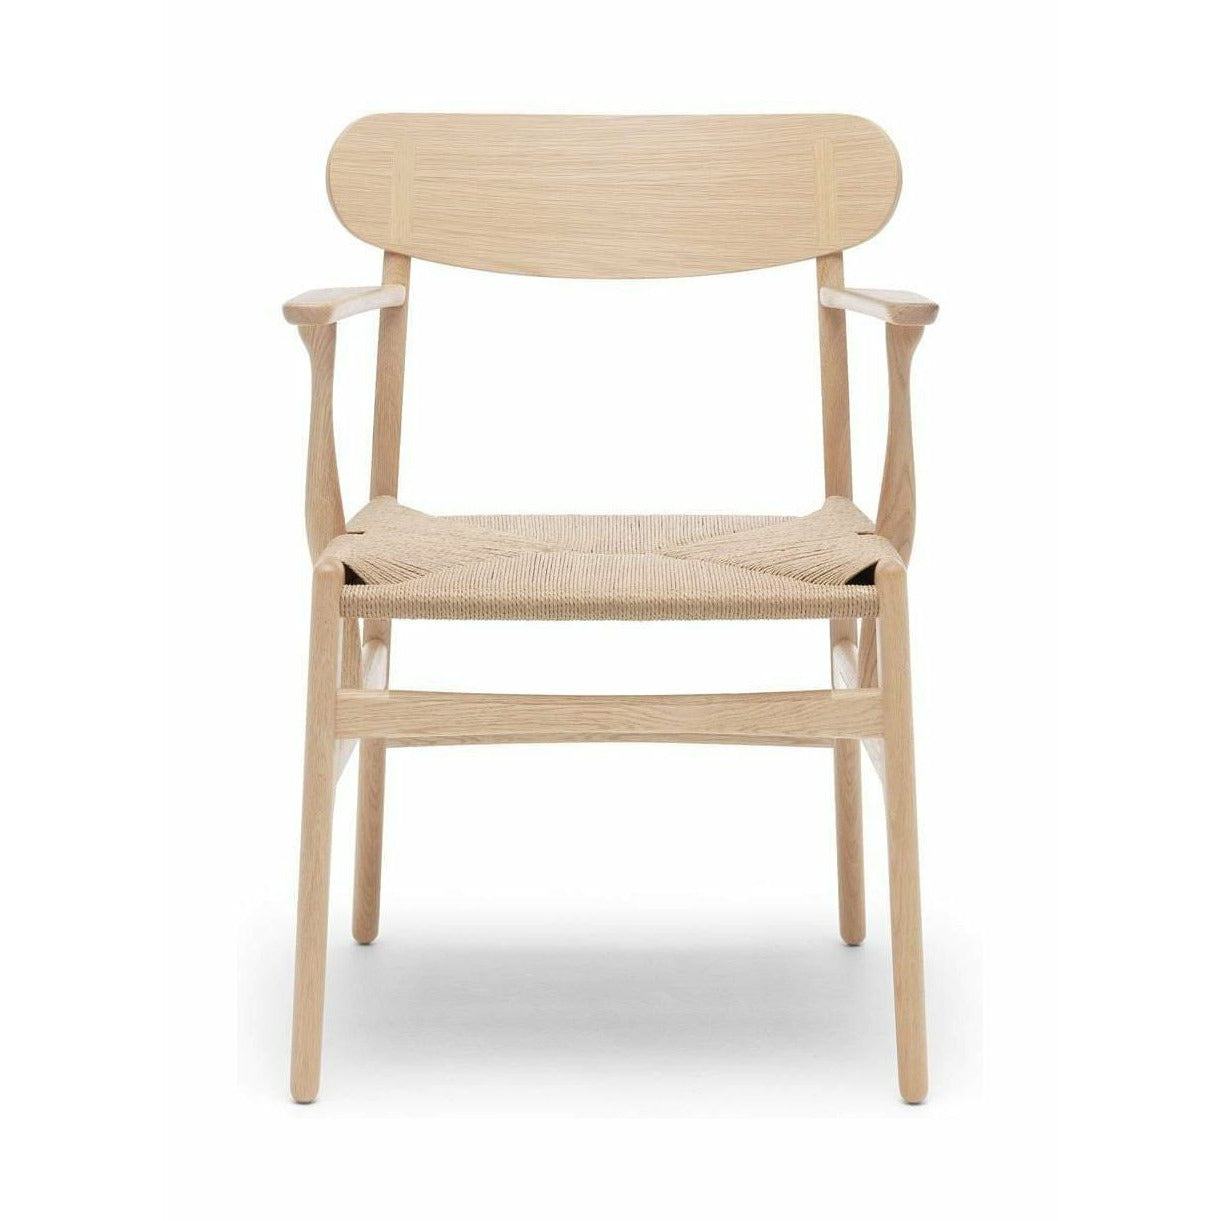 Carl Hansen CH26 -stol, eik såpe/naturlig ledning